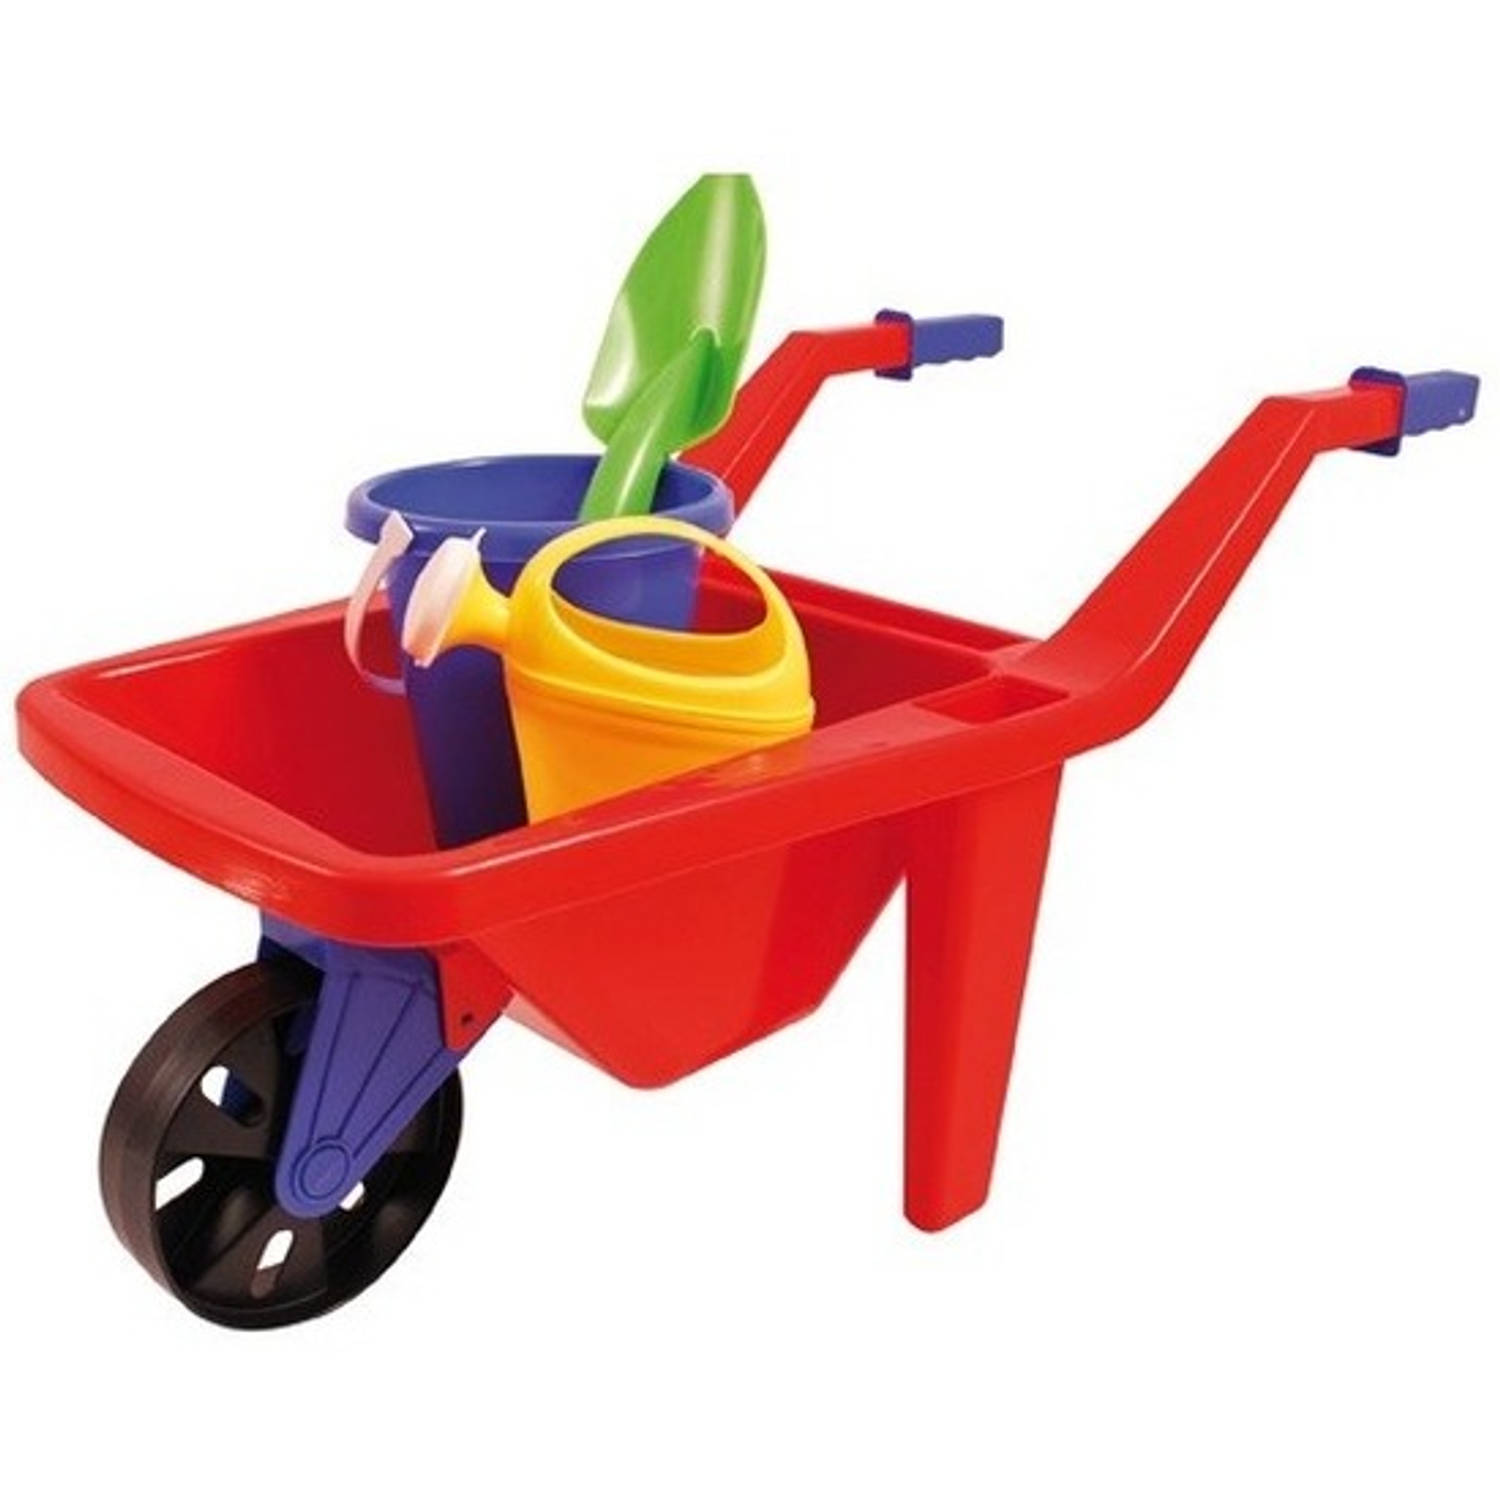 Buitenspeelgoed kruiwagen speelsetje voor kinderen 65 cm Zandbak-strand speelgoed